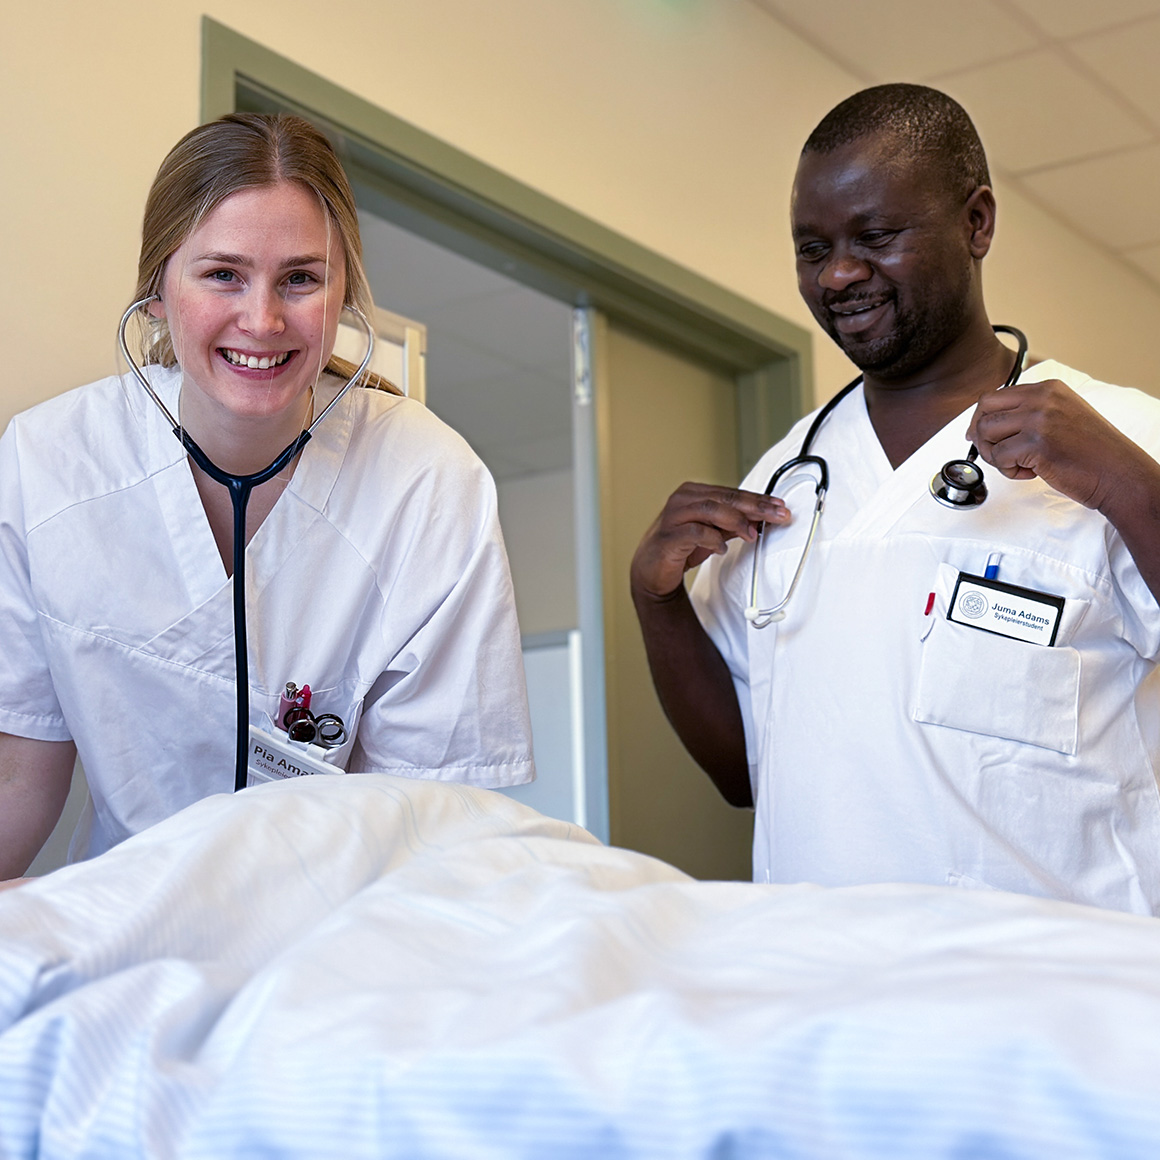 Pia Amalie Saga Berberg og Juma Adams er sykepleiestudenter ved campus Porsgrunn